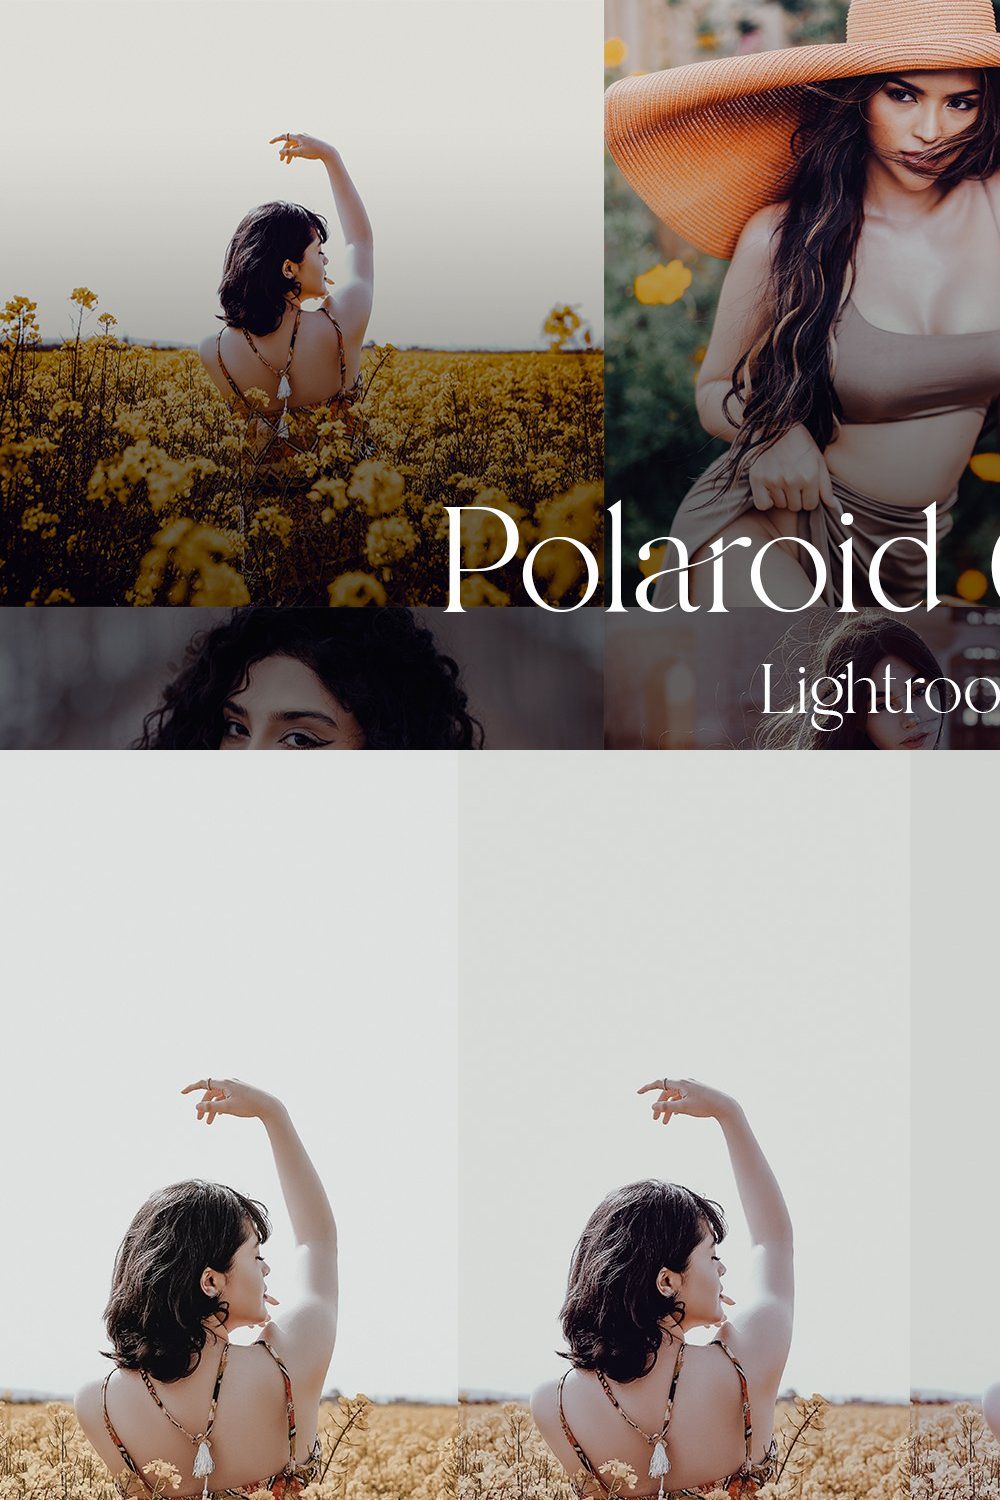 Polaroid 600 V2 — Lightroom pinterest preview image.